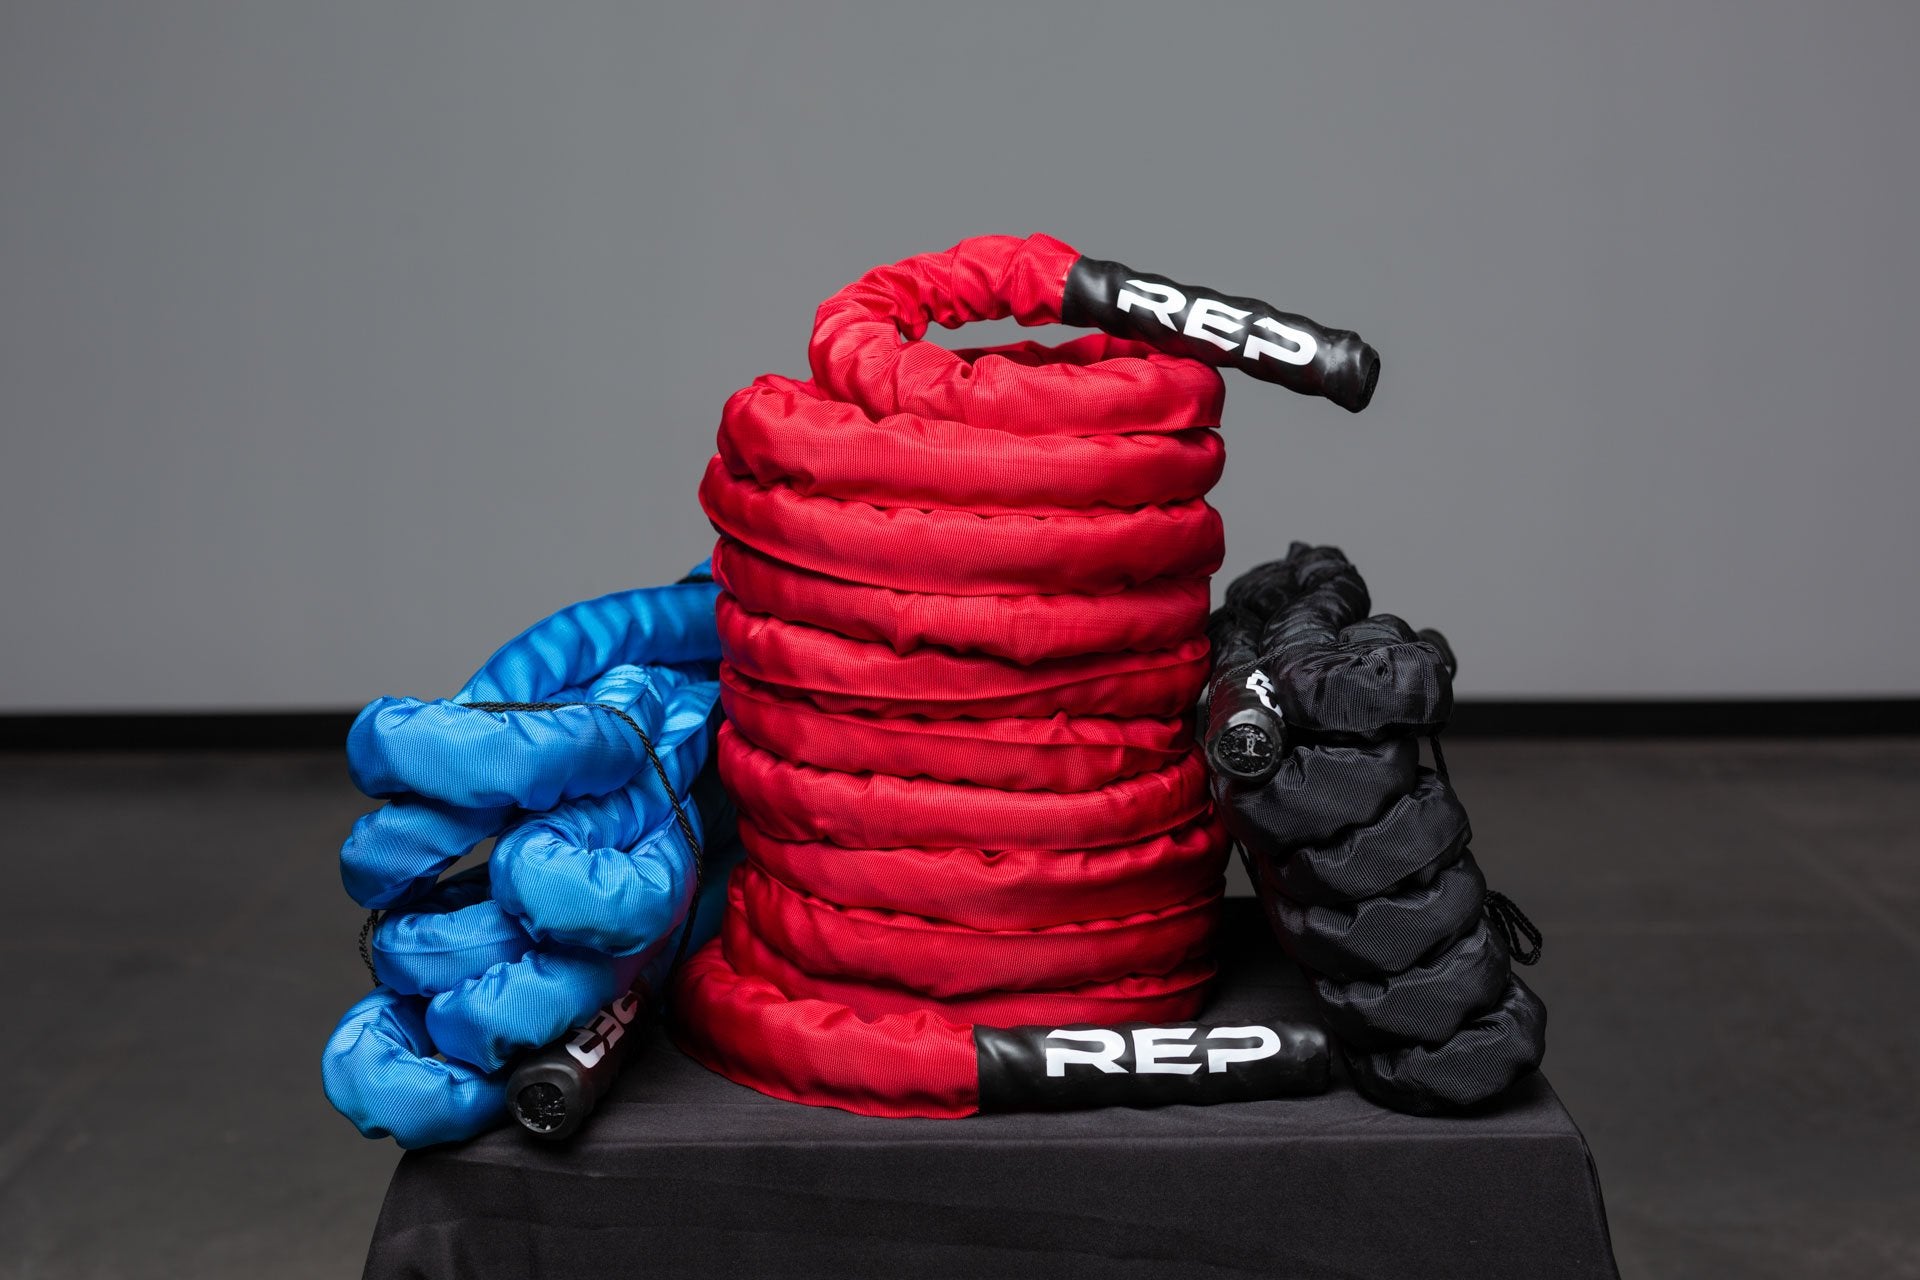 3 Battle Ropes, 1 blue, 1 red, 1 black